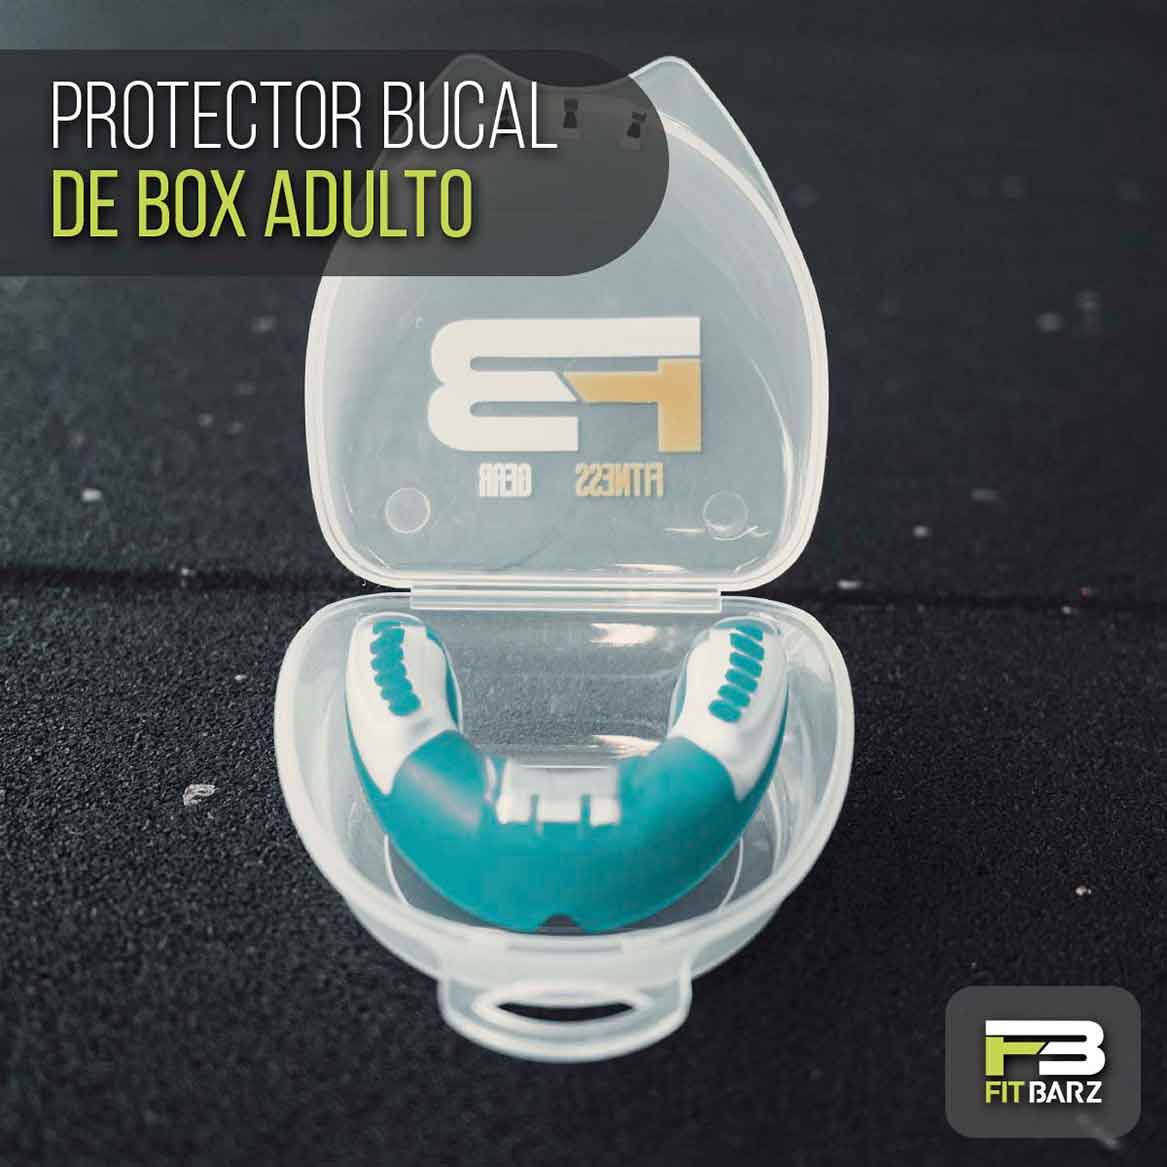 Protector Bucal de Box Adulto - Fitbarz